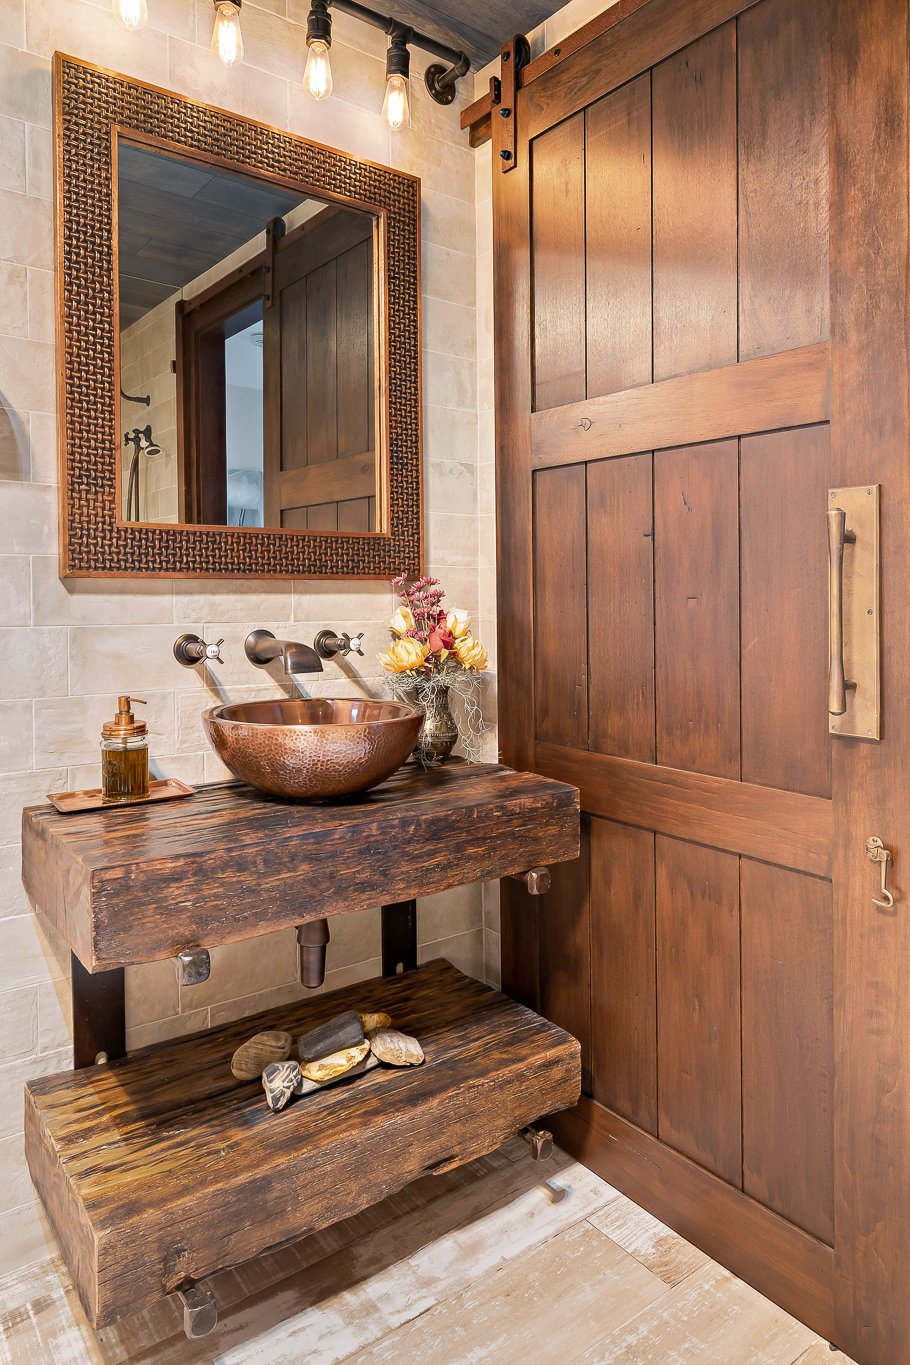 classic looking hand wash sink behind timber door